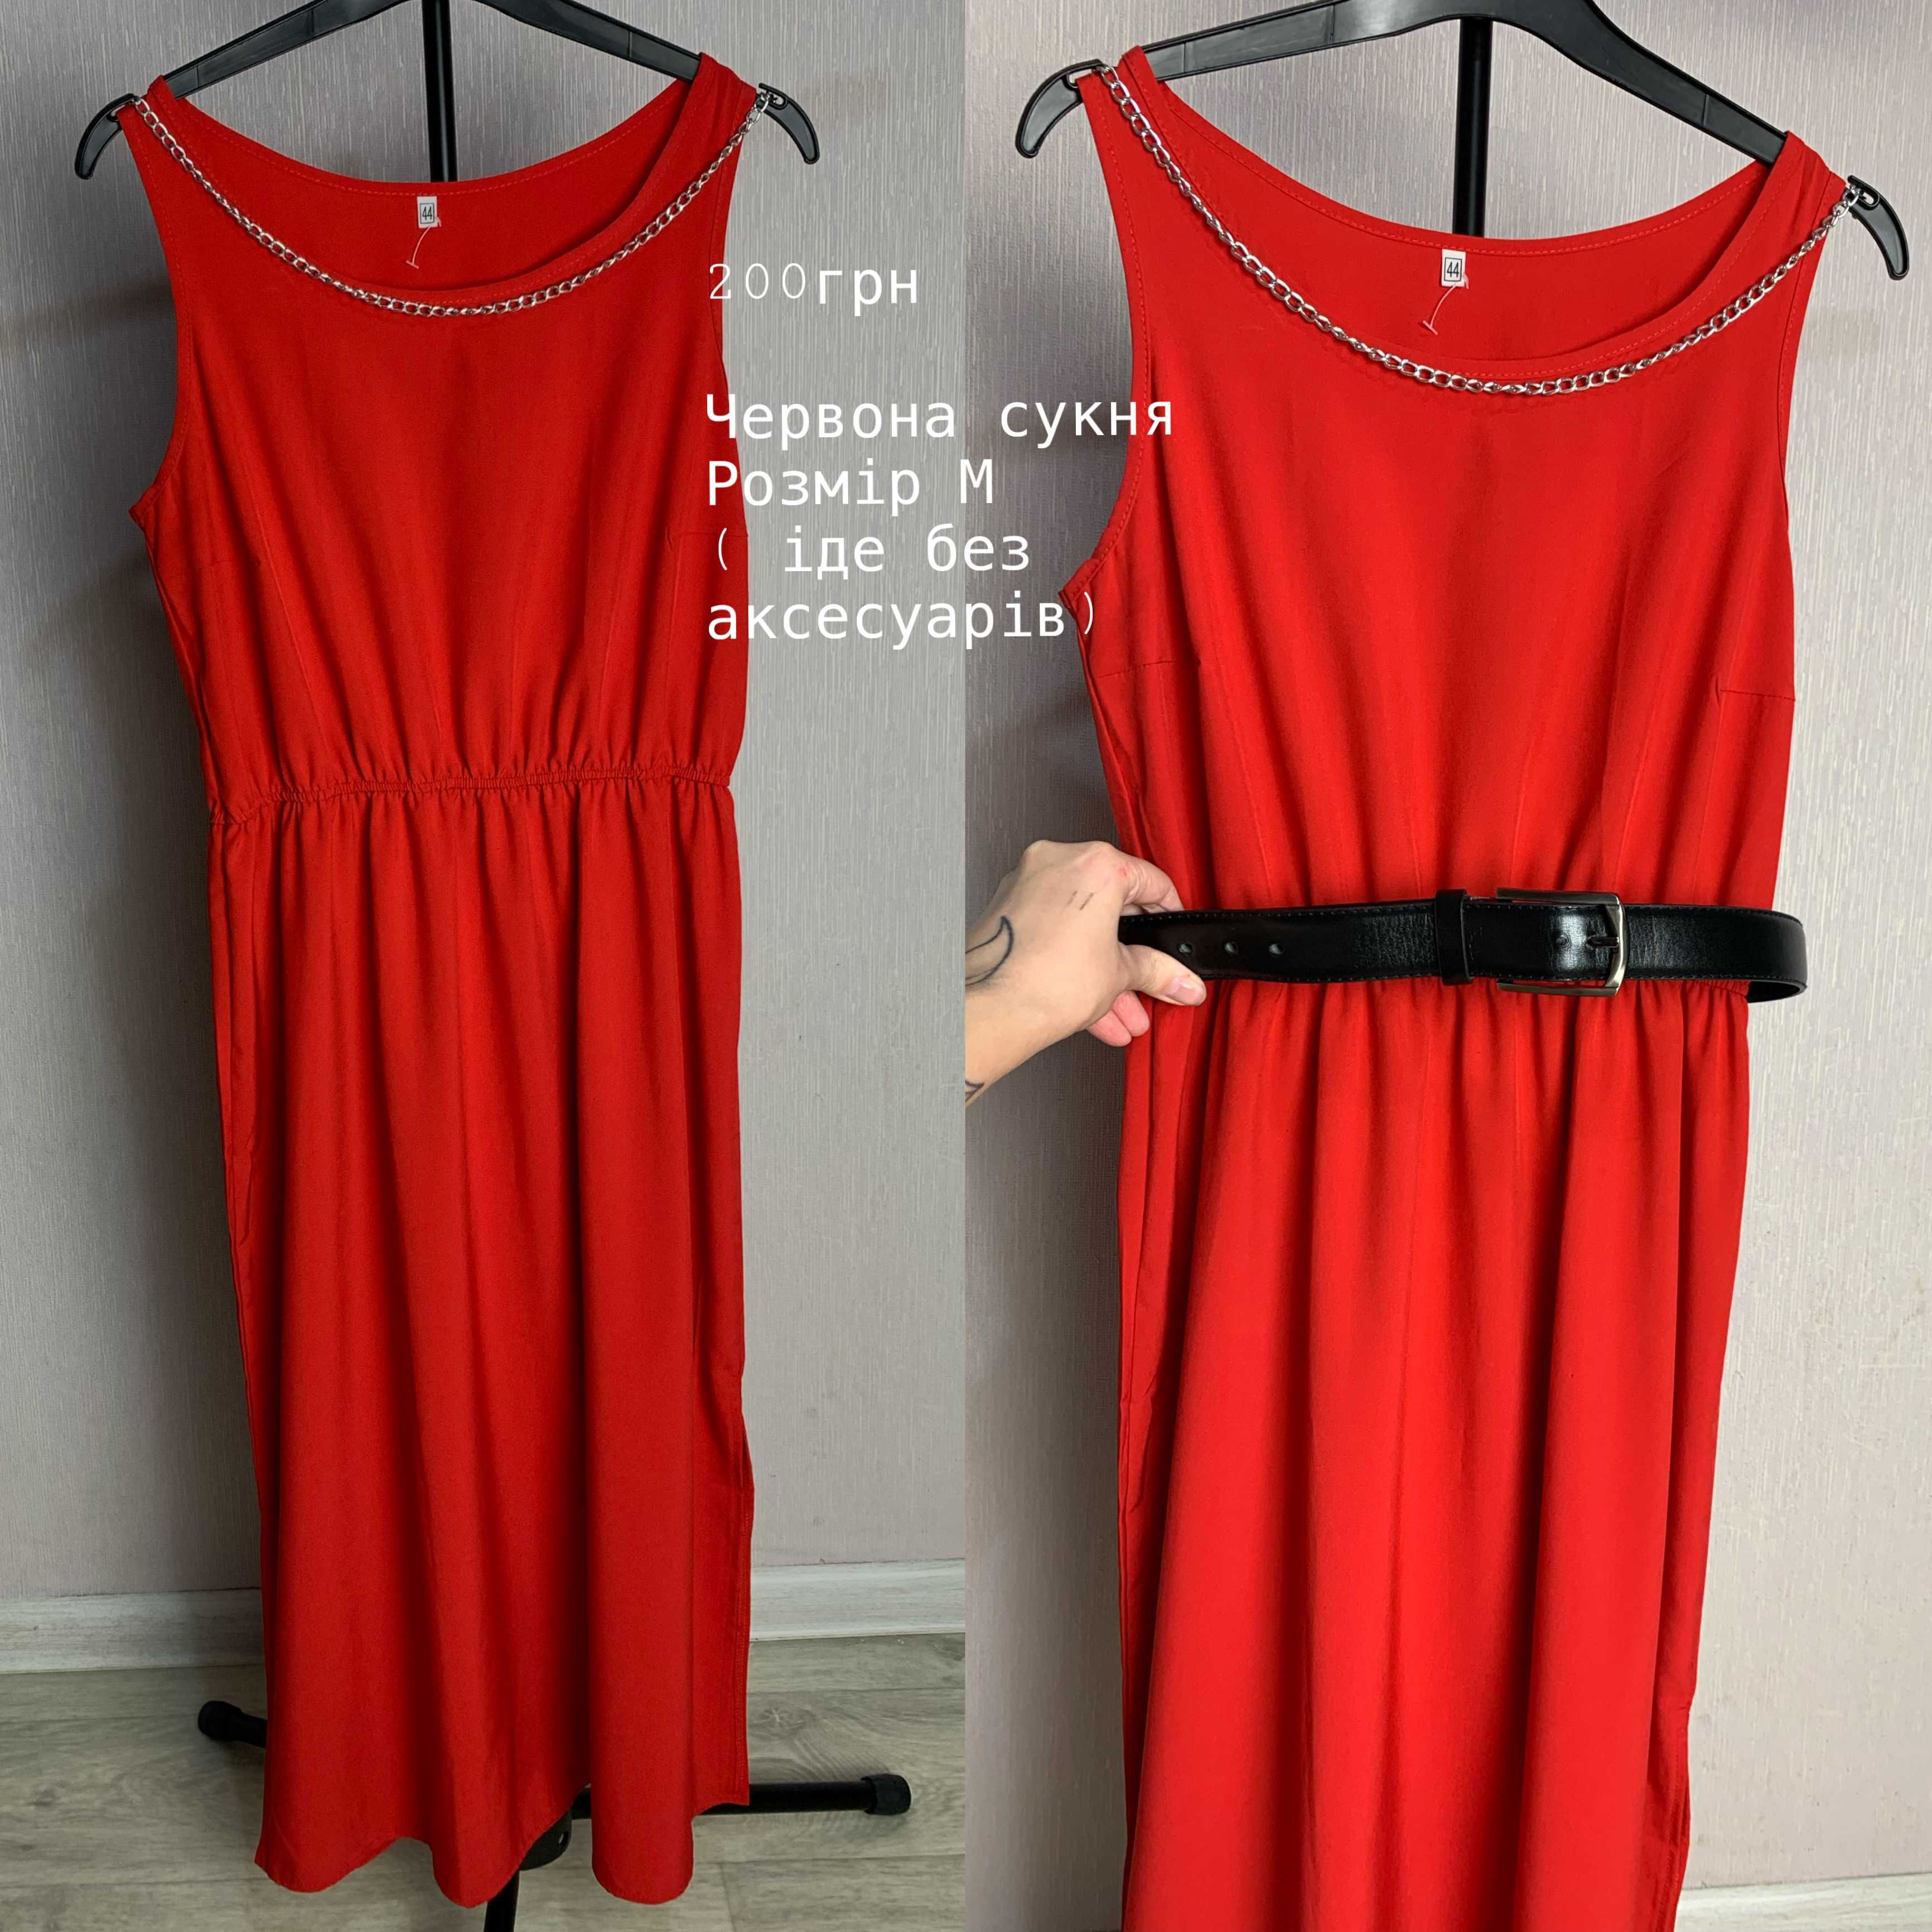 Червона сукня, розмір М (без аксесуара)